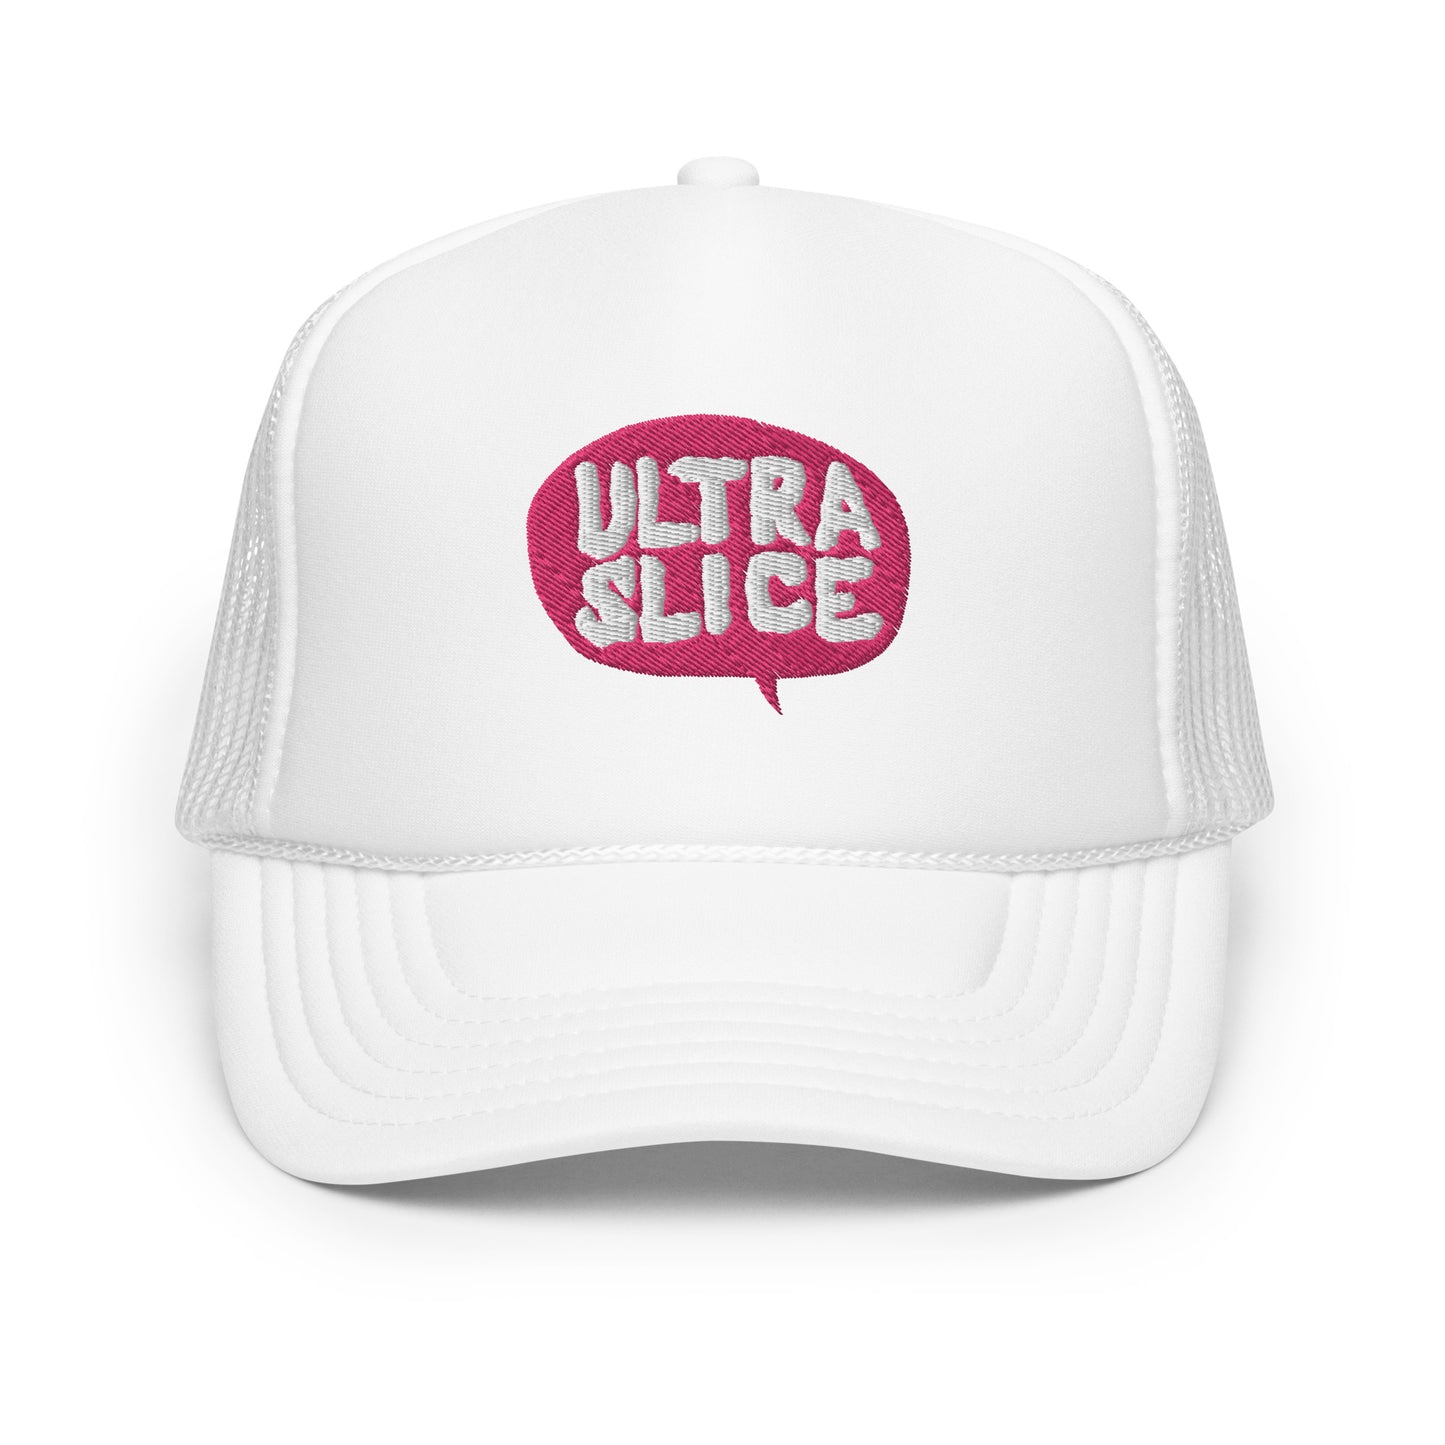 Ultra Slice - Say What? Foam Trucker hat